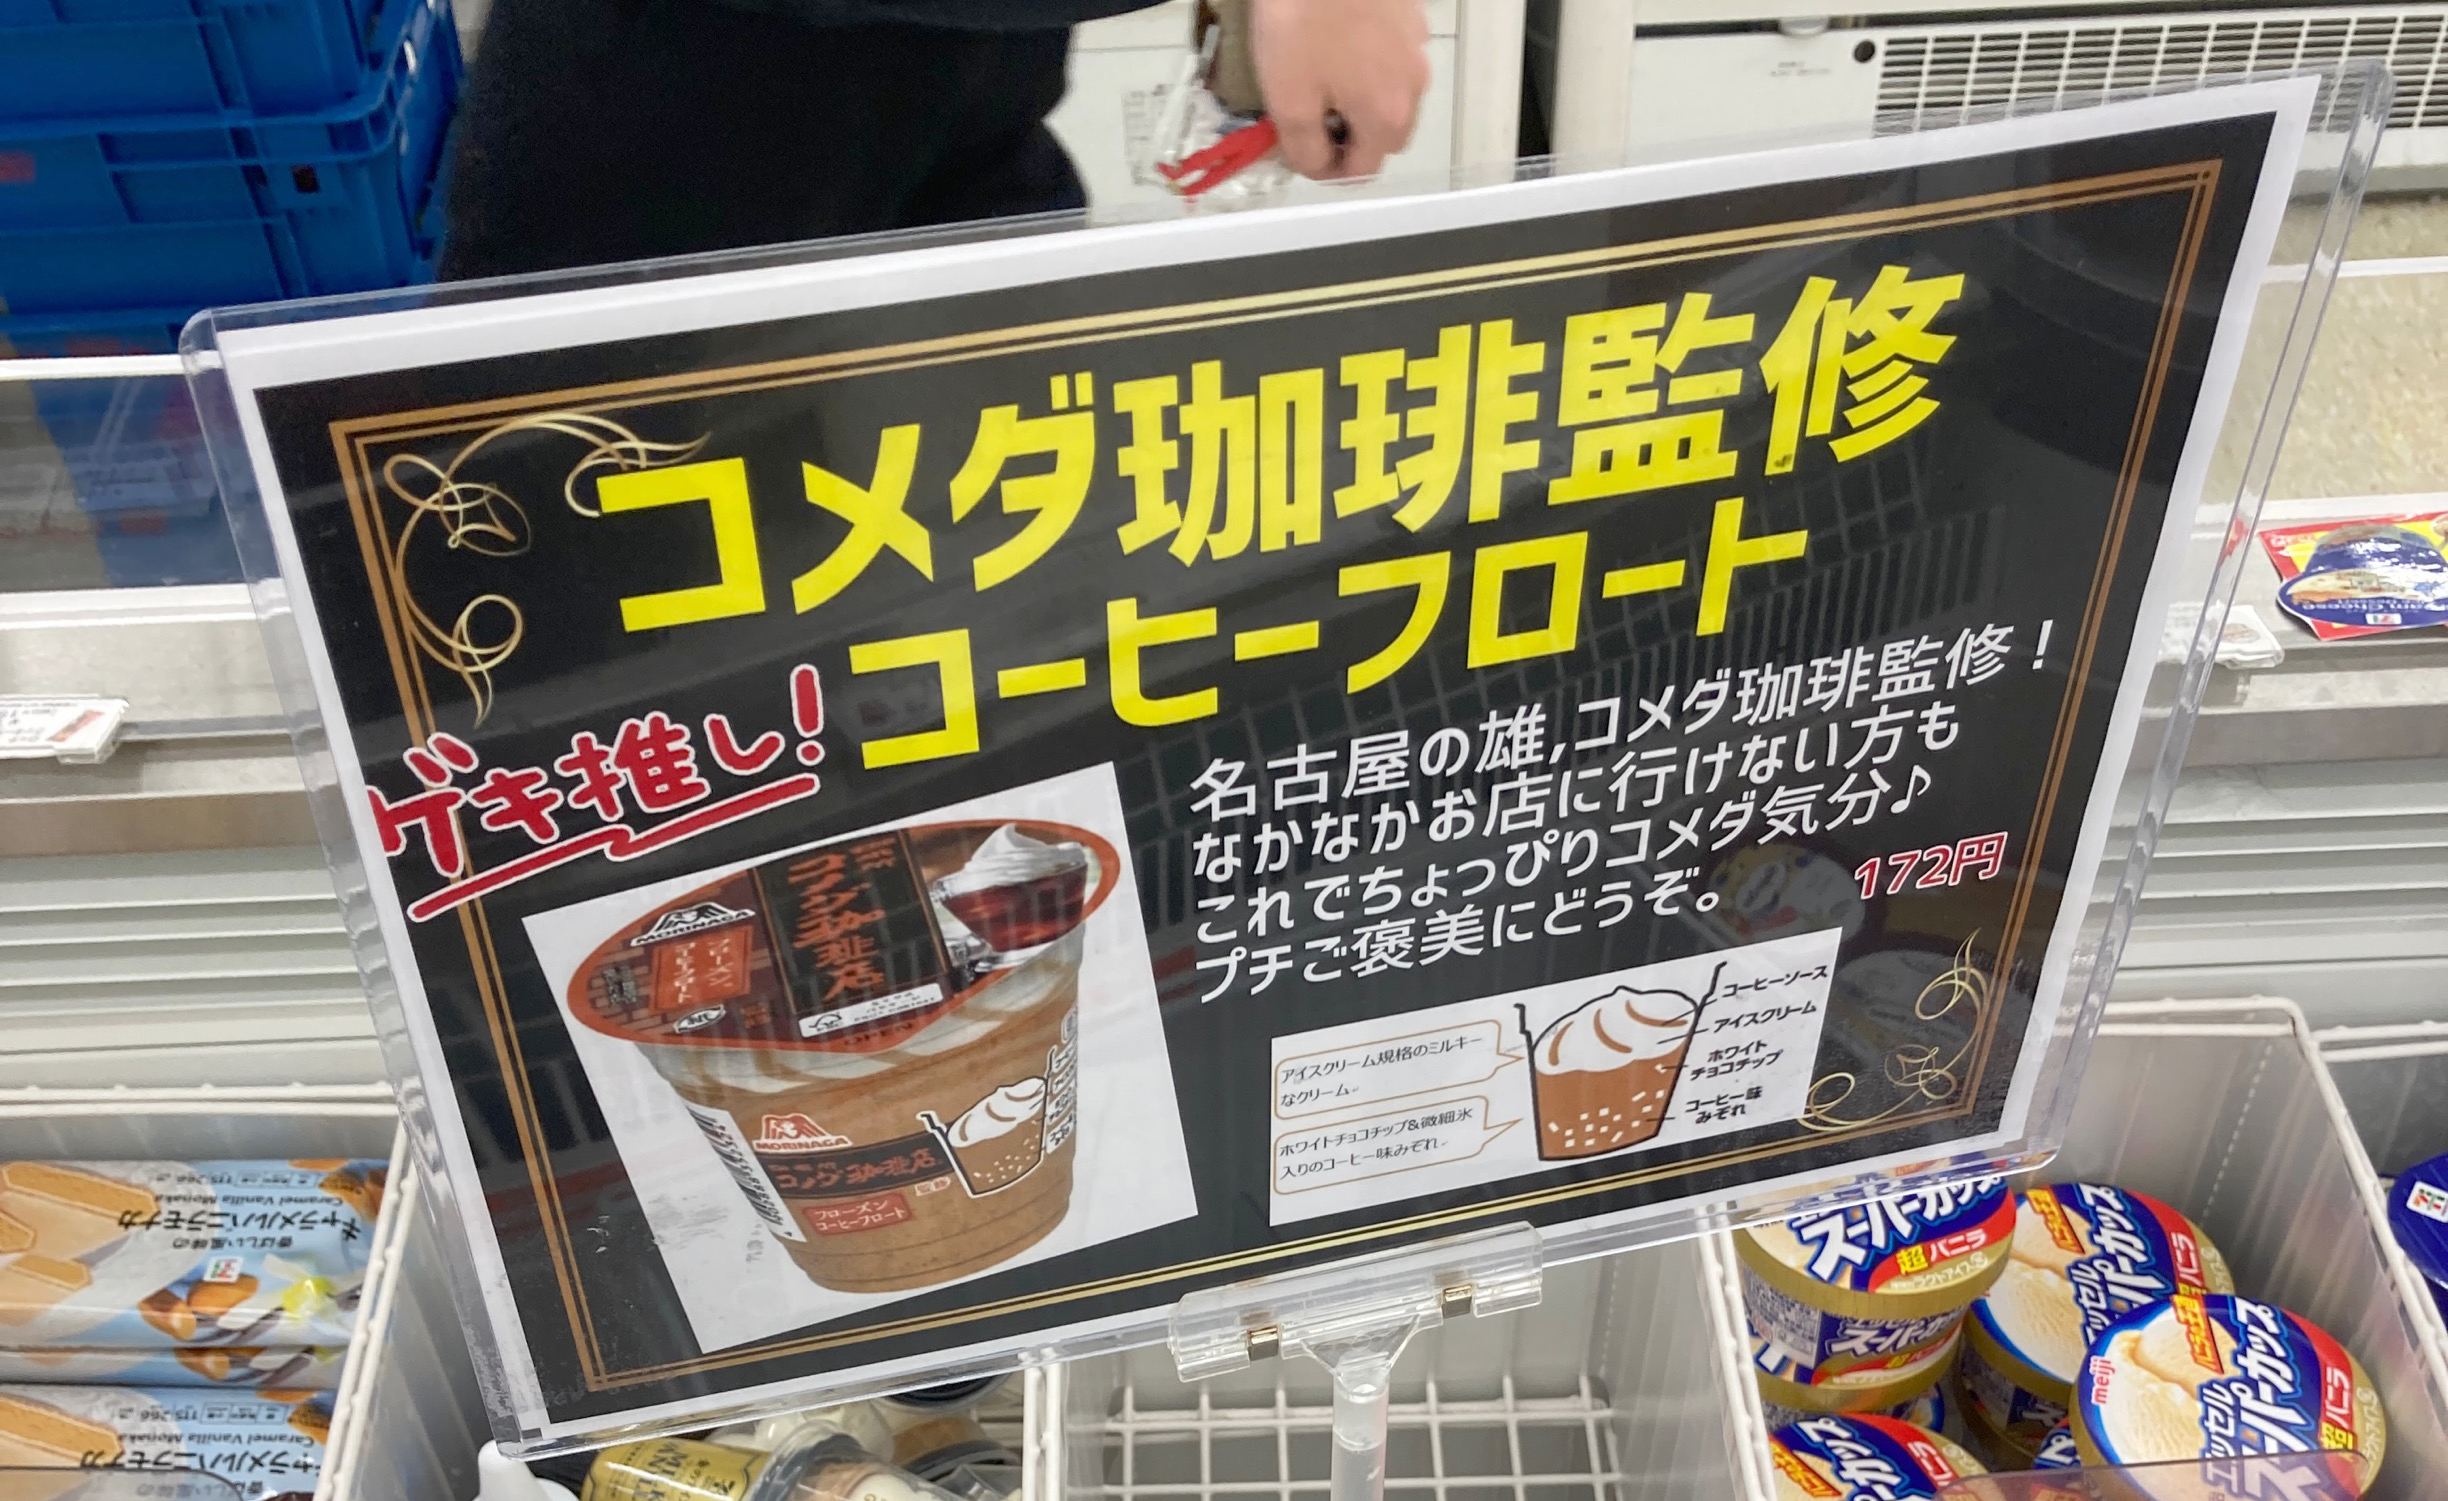 氷菓を食べない私が コメダ珈琲監修 フローズンコーヒーフロート を購入してしまった理由 ロケットニュース24